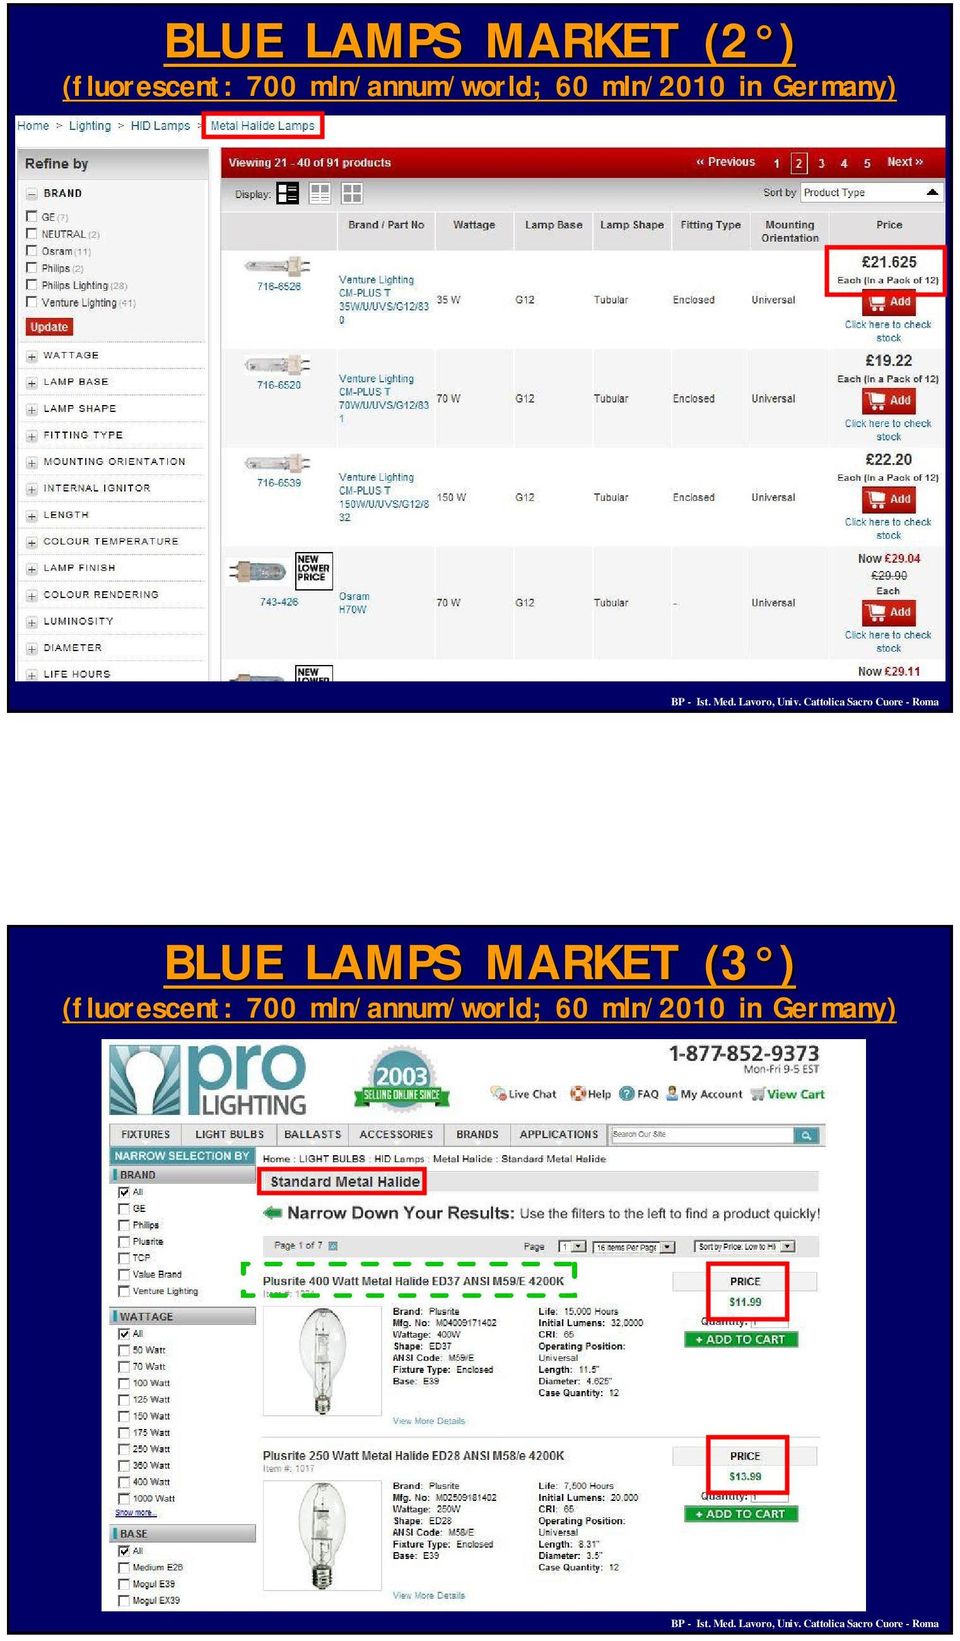 BLUE LAMPS MARKET (3 ) (fluorescent: 700